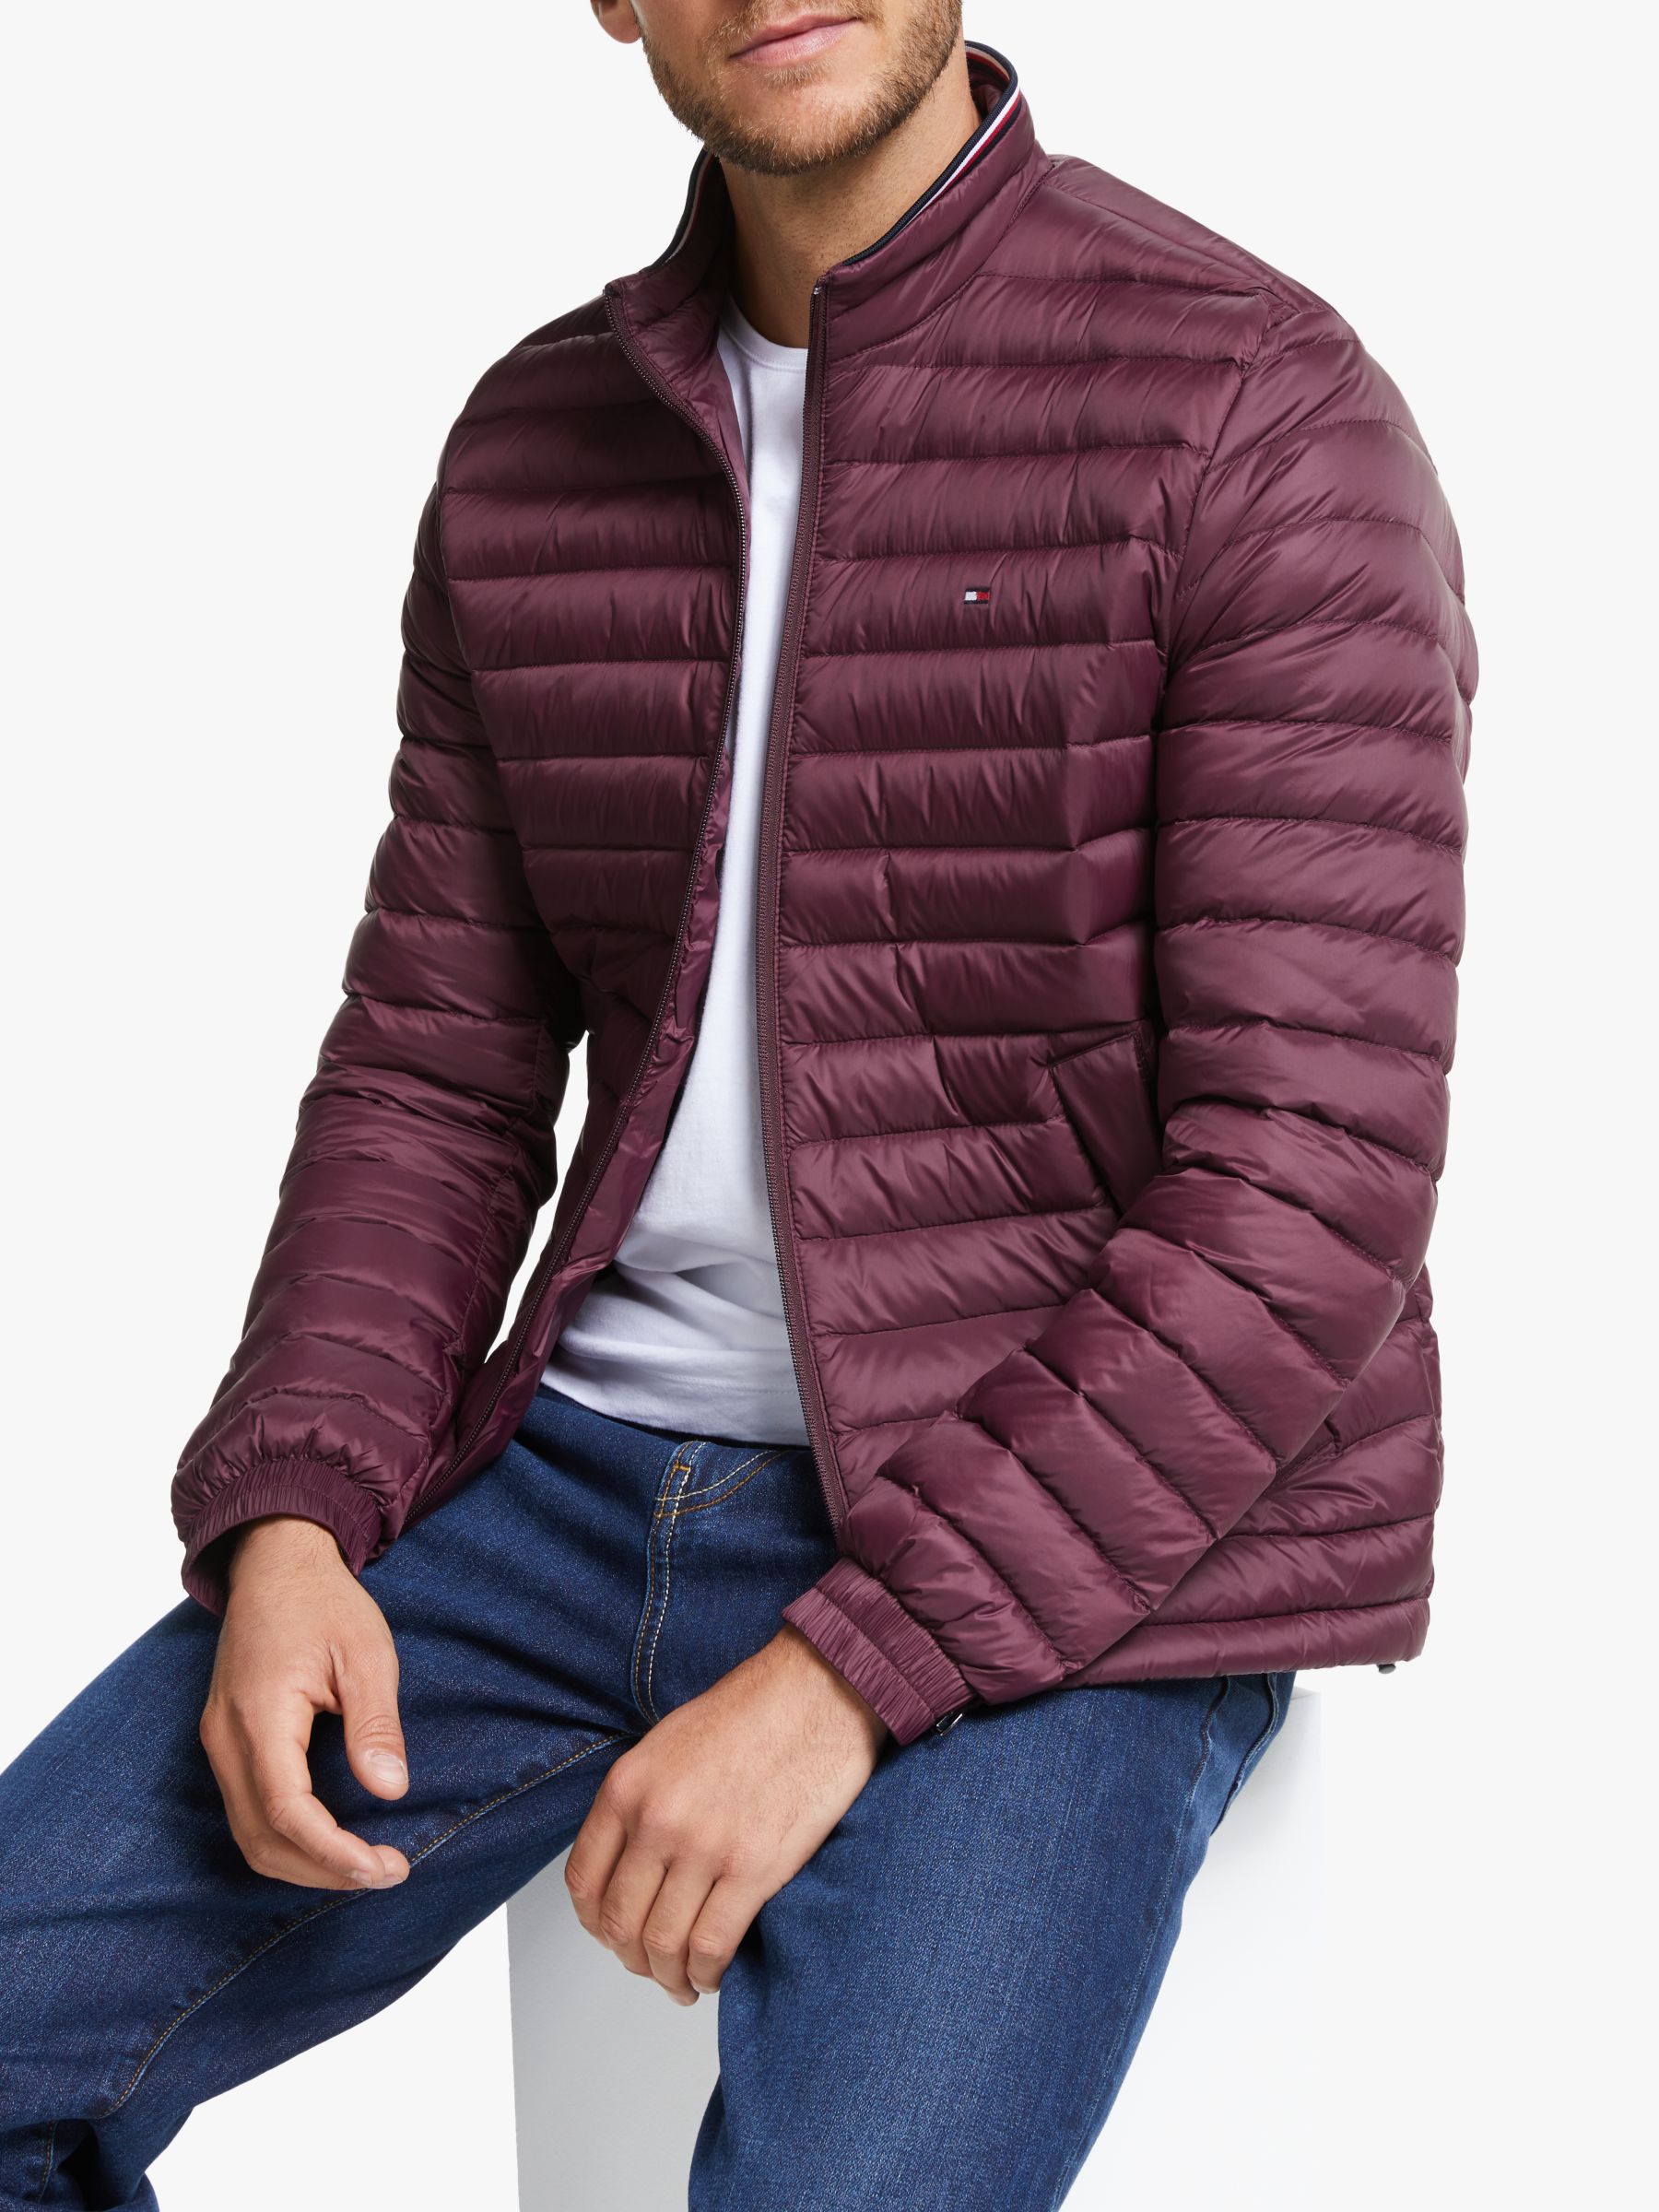 tommy hilfiger burgundy jacket